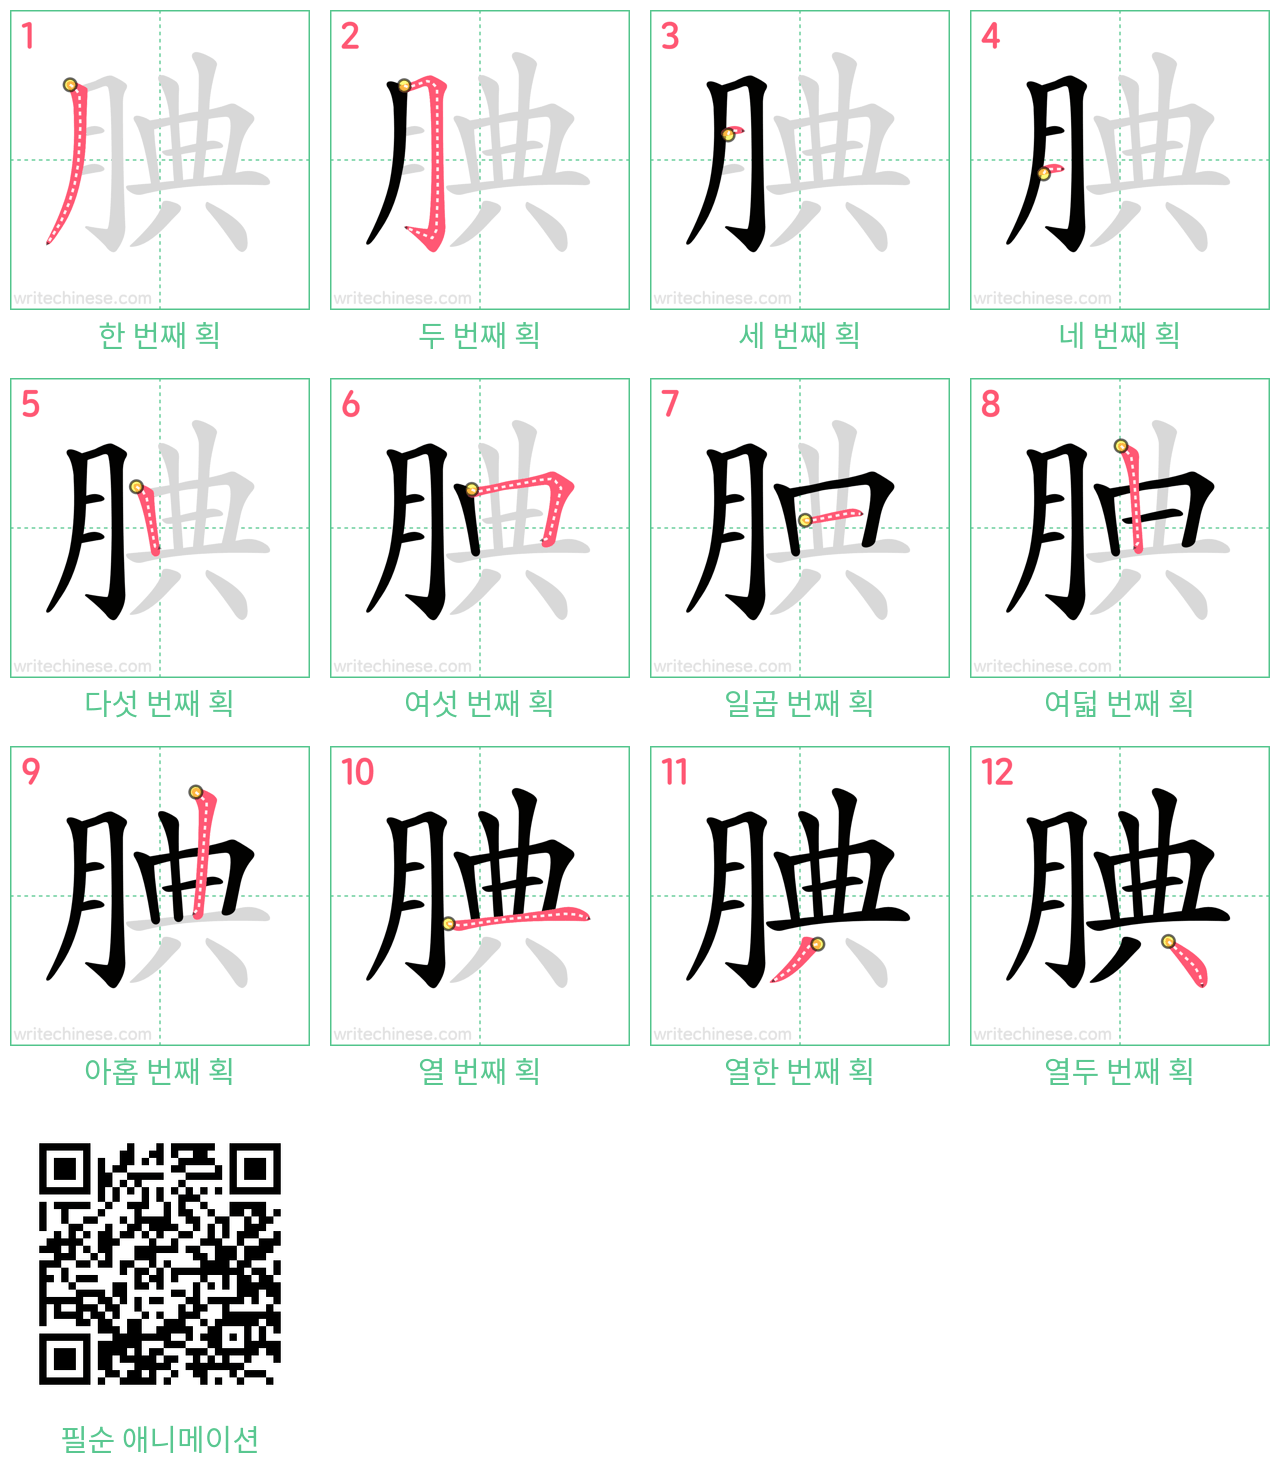 腆 step-by-step stroke order diagrams